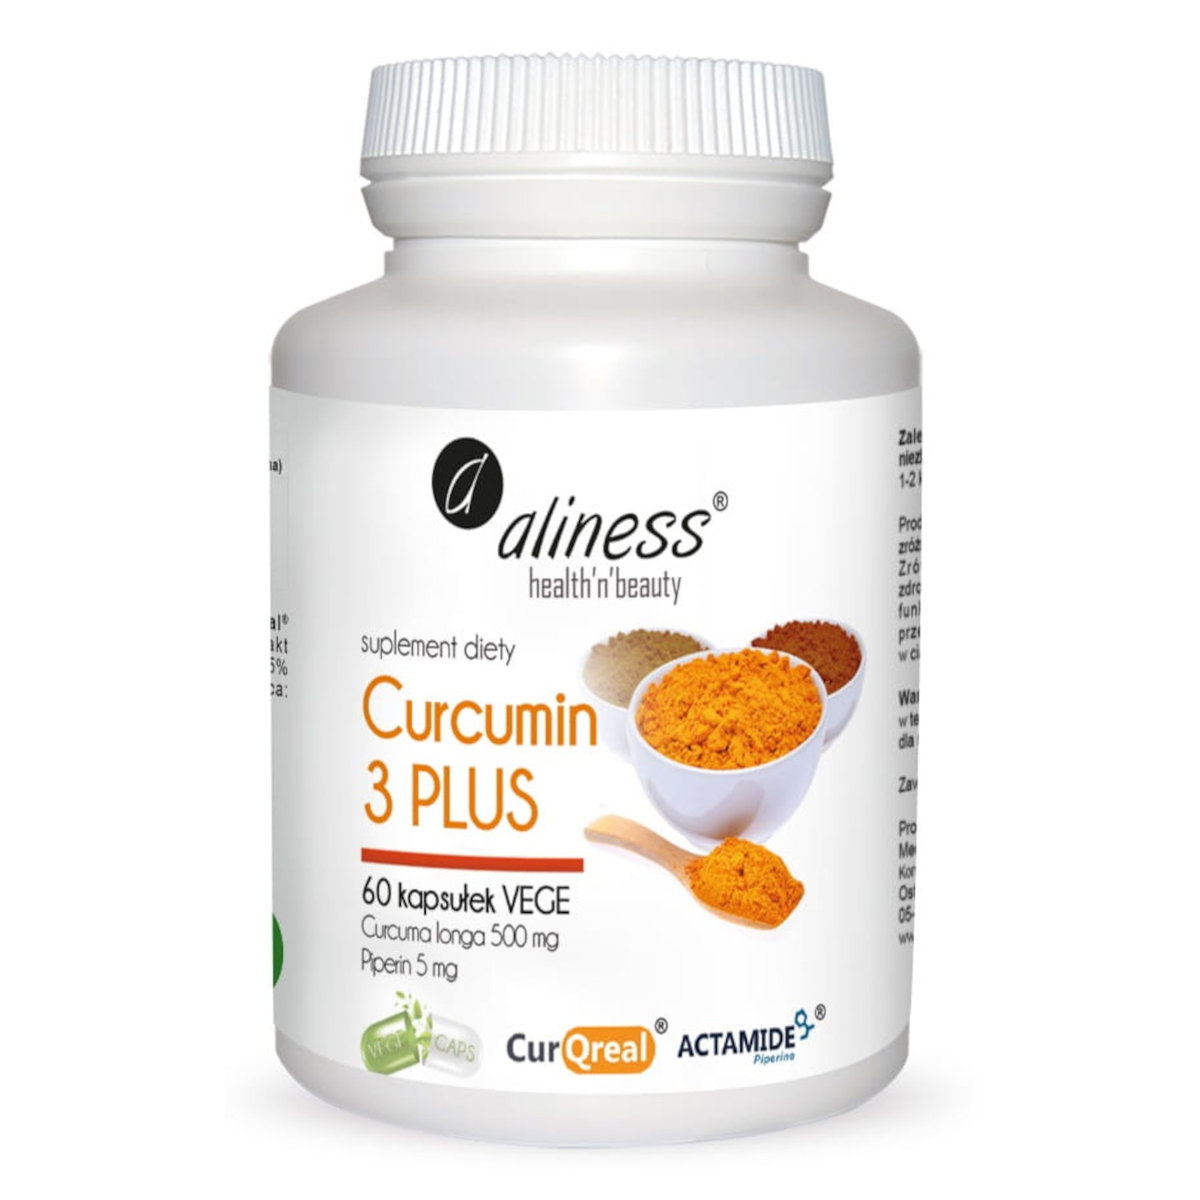 MedicaLine Curcumin C3 Complex Plus (Aliness) TT001447